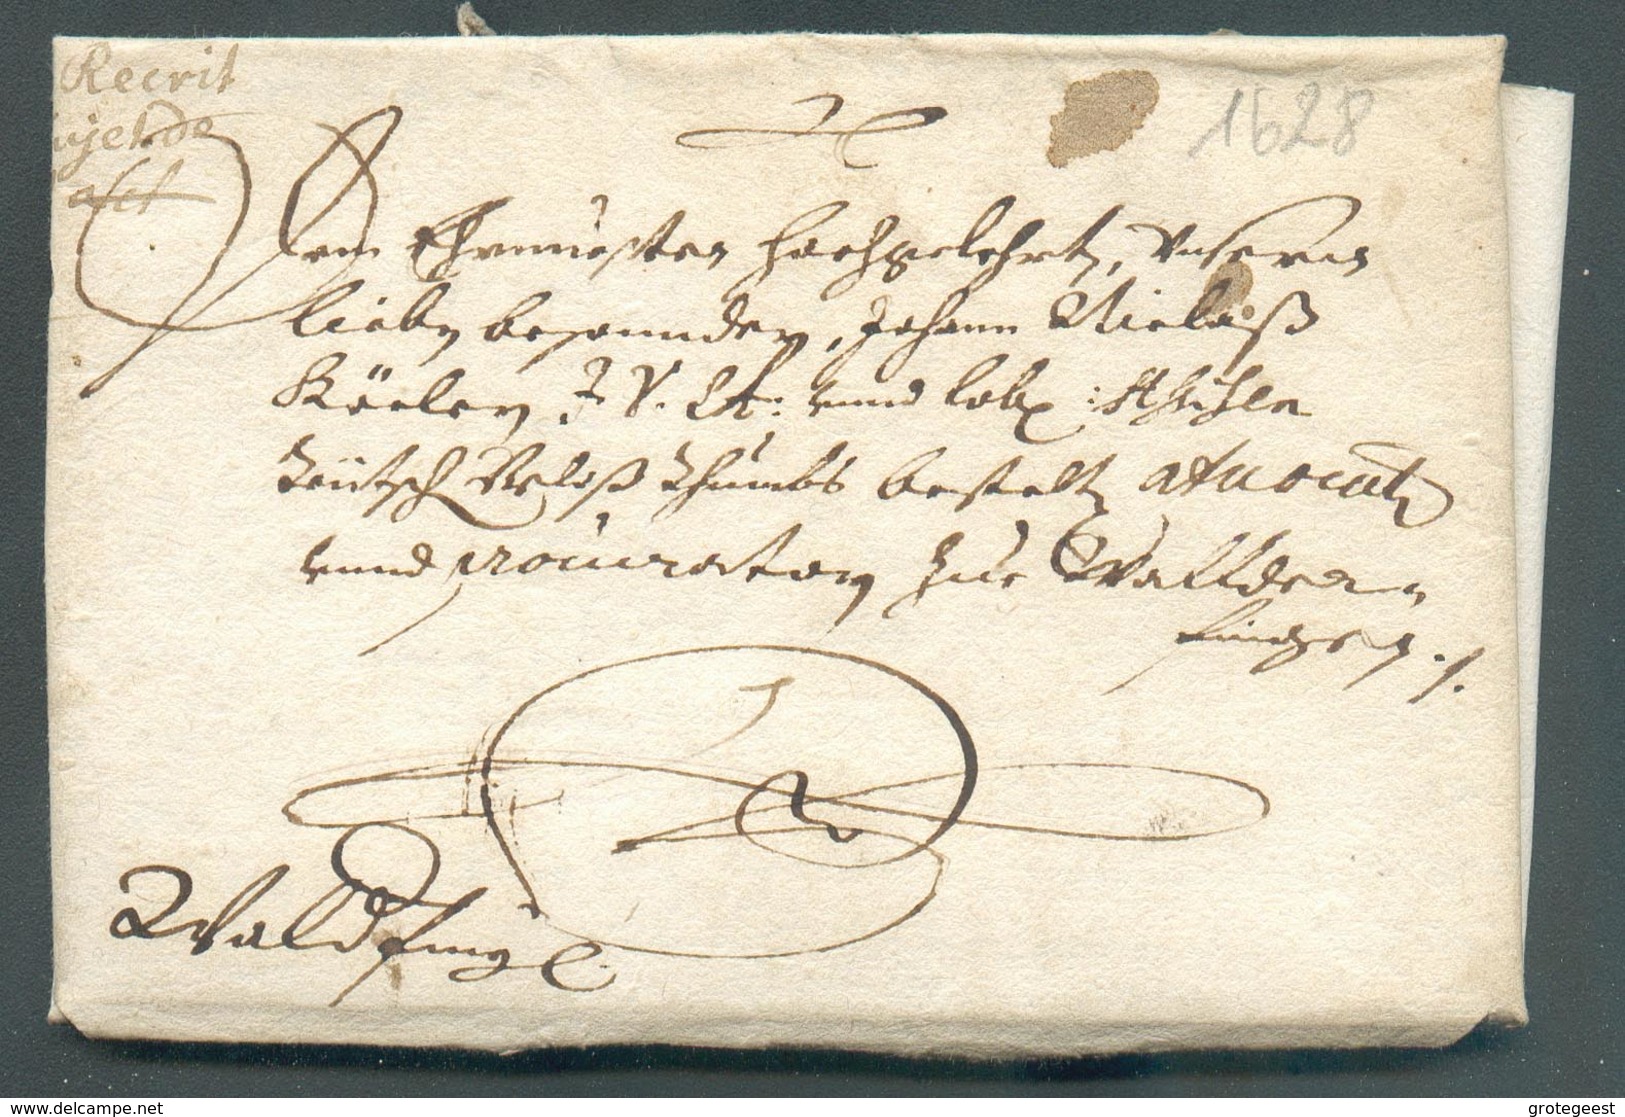 LAC Du Comte De Sully à Mr. Köler à Hipelstorff Mai 1628 (régisseur Des Forges De Bergh Au Luxembourg) Vers Walferdange - ...-1852 Préphilatélie